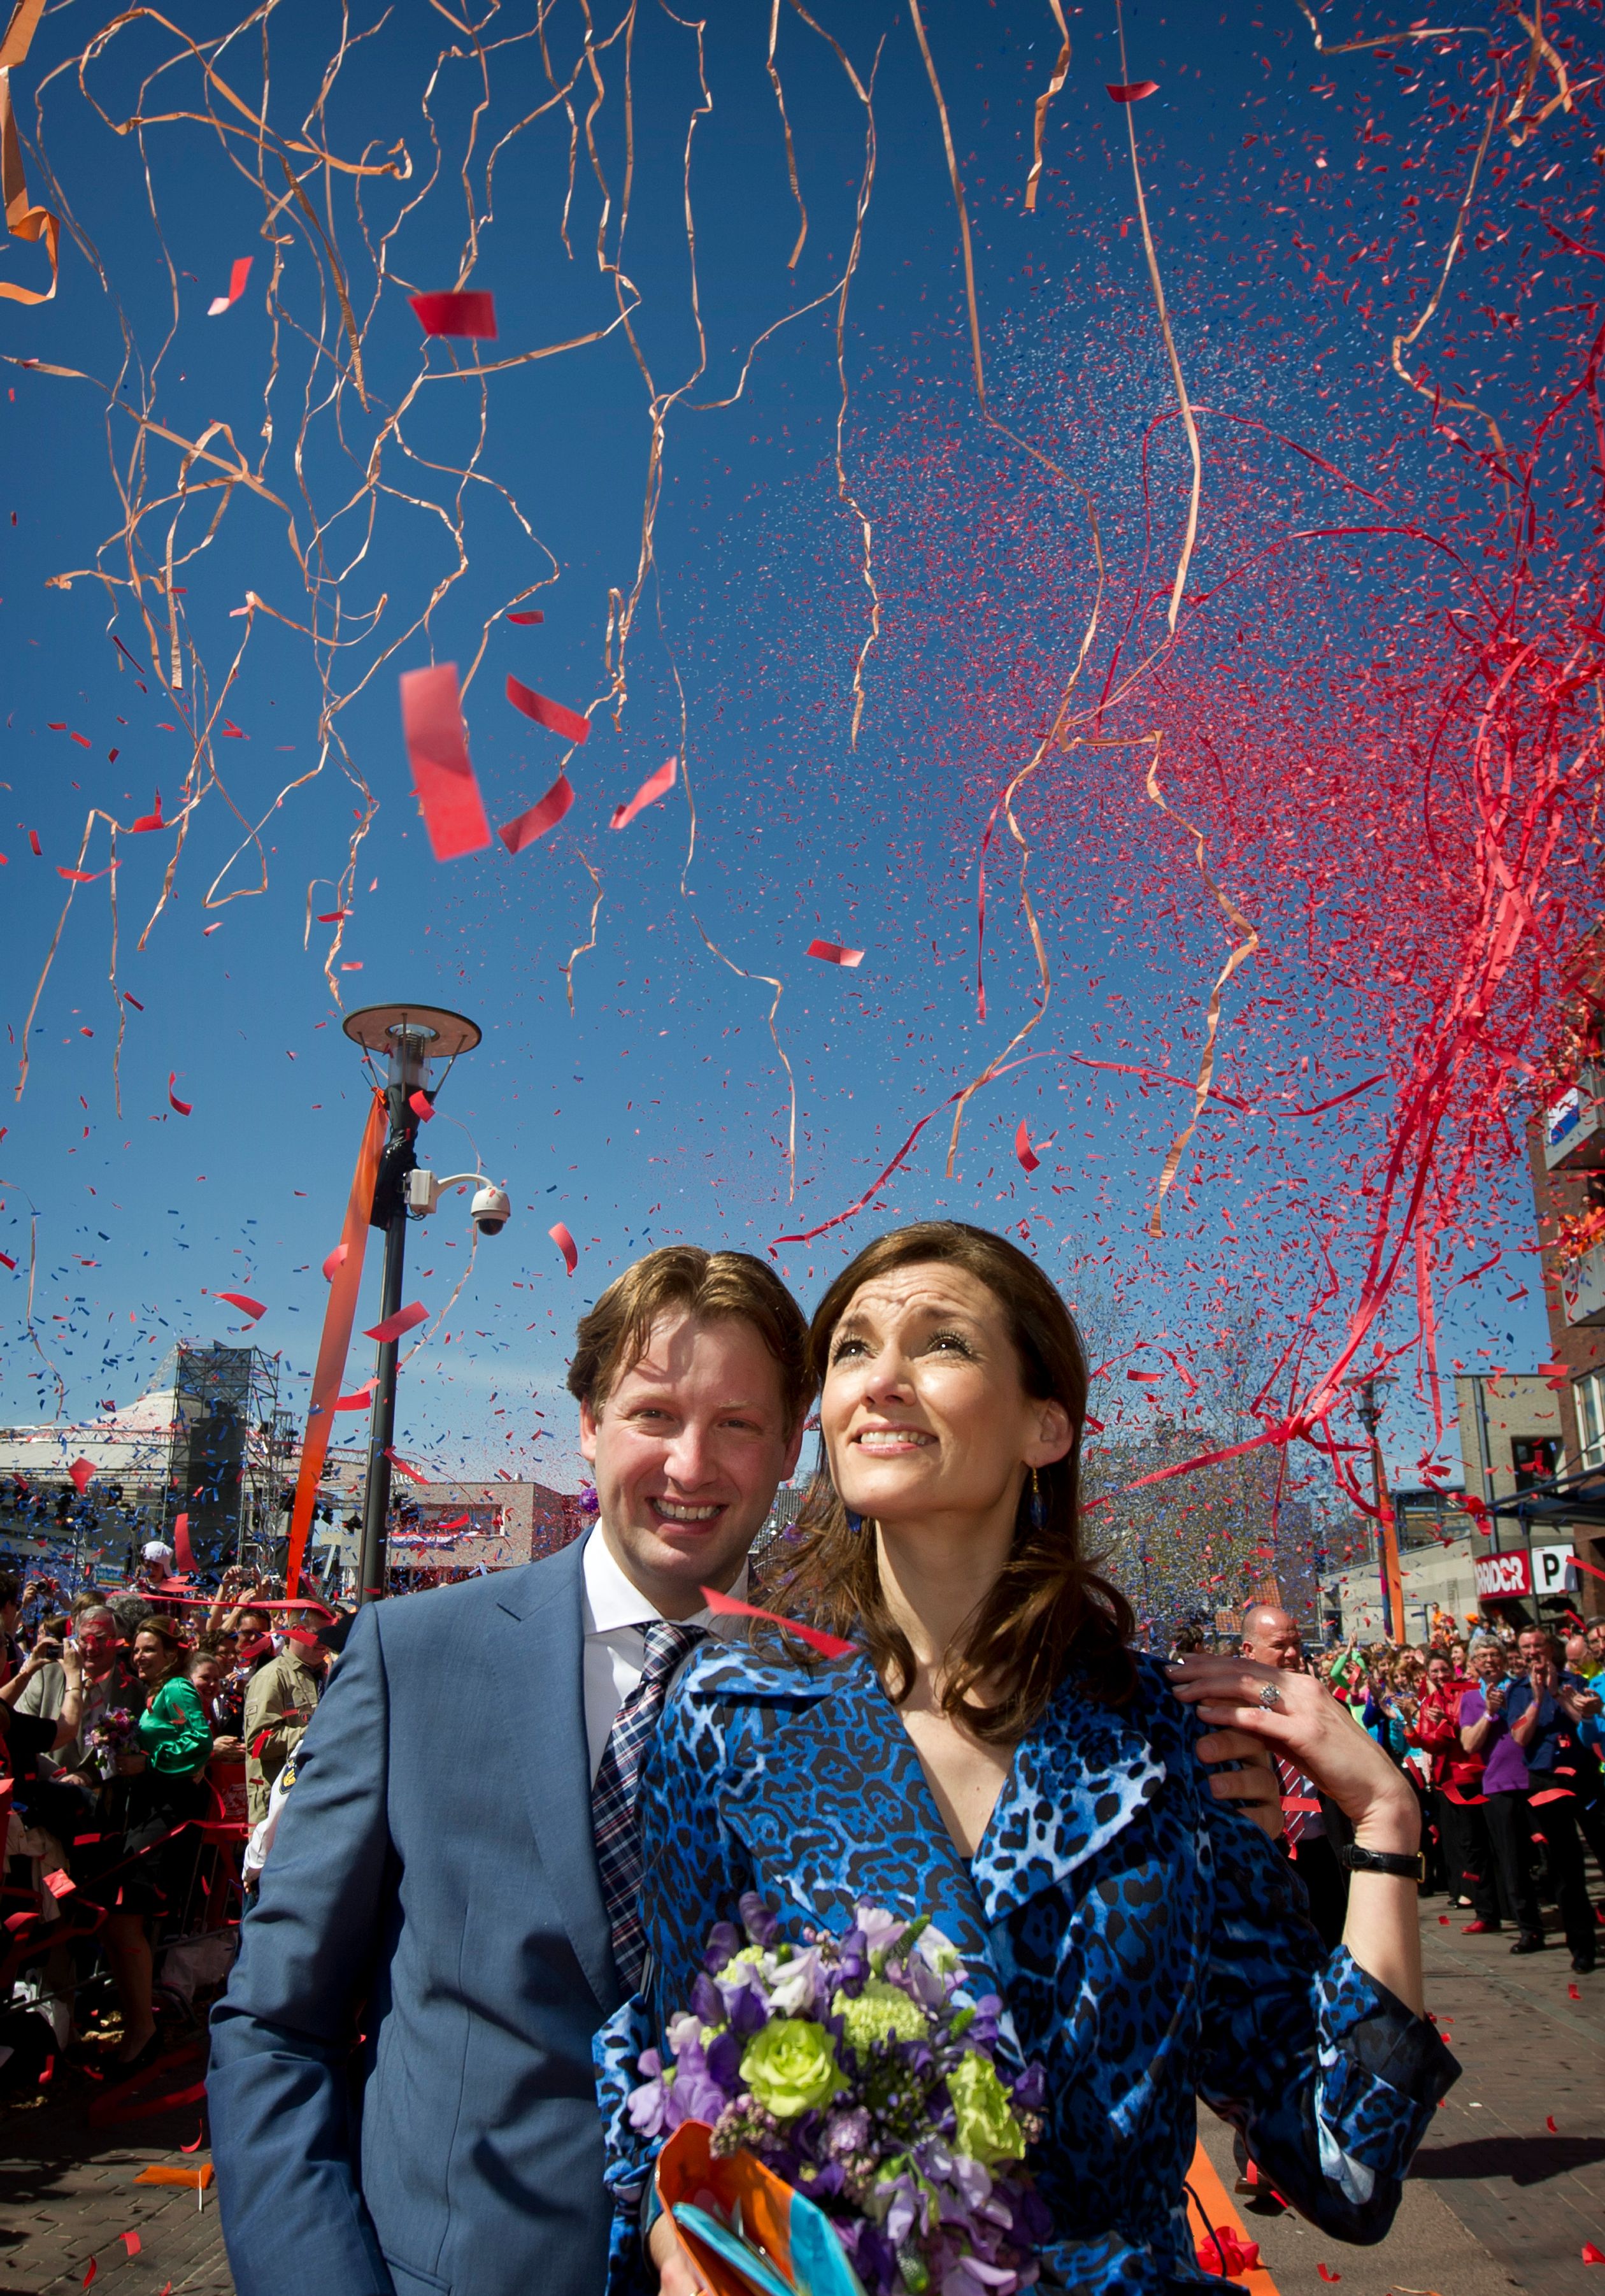 Prins Floris en prinses Aimée tijdens de viering van Koninginnedag in Veenendaal in 2012.